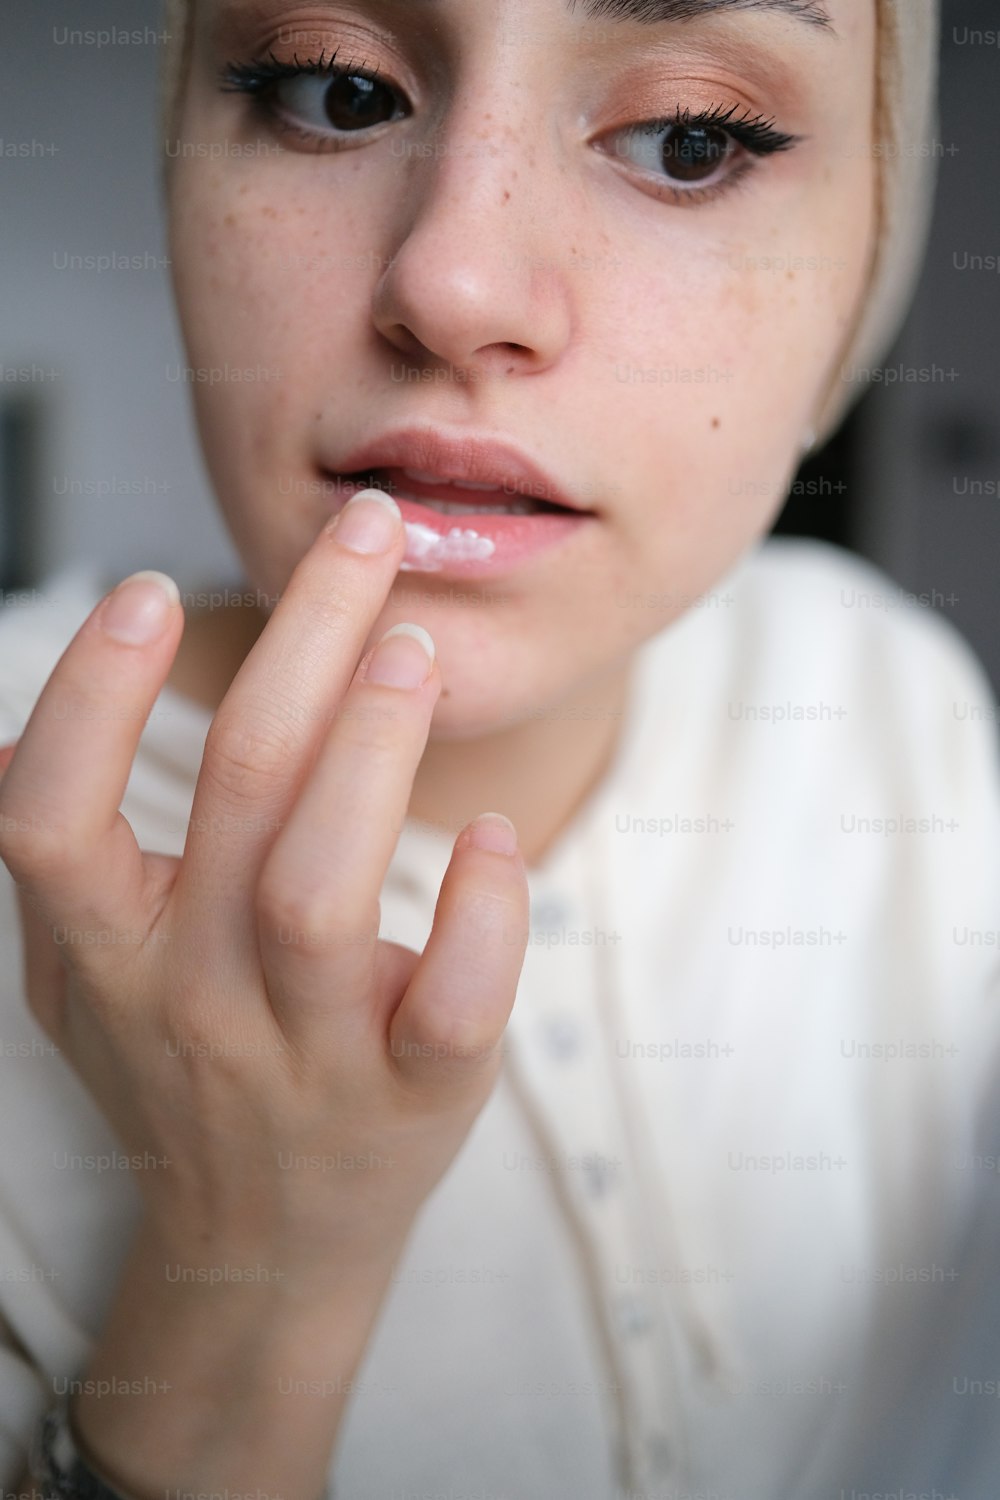 eine Nahaufnahme einer Person mit einem Ring am Finger